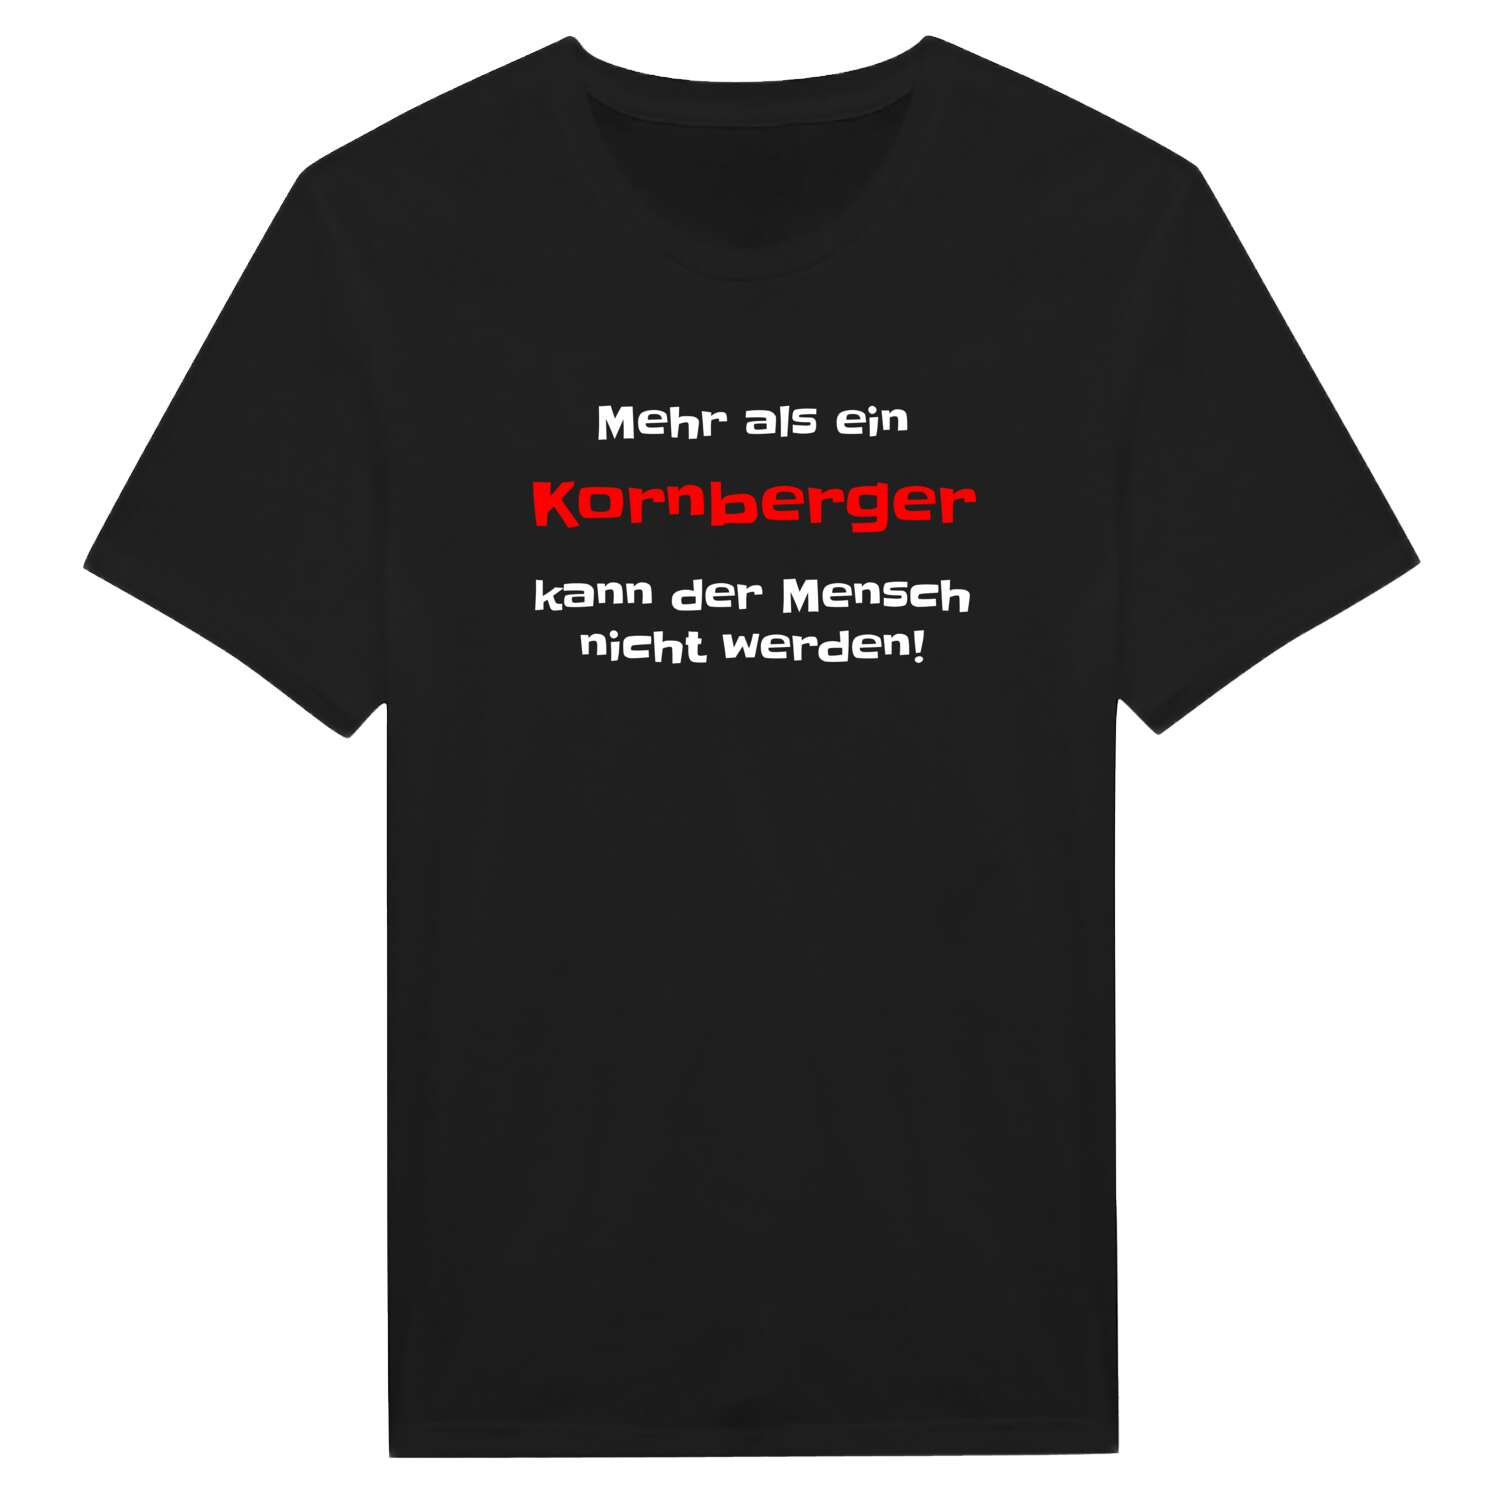 Kornberg T-Shirt »Mehr als ein«